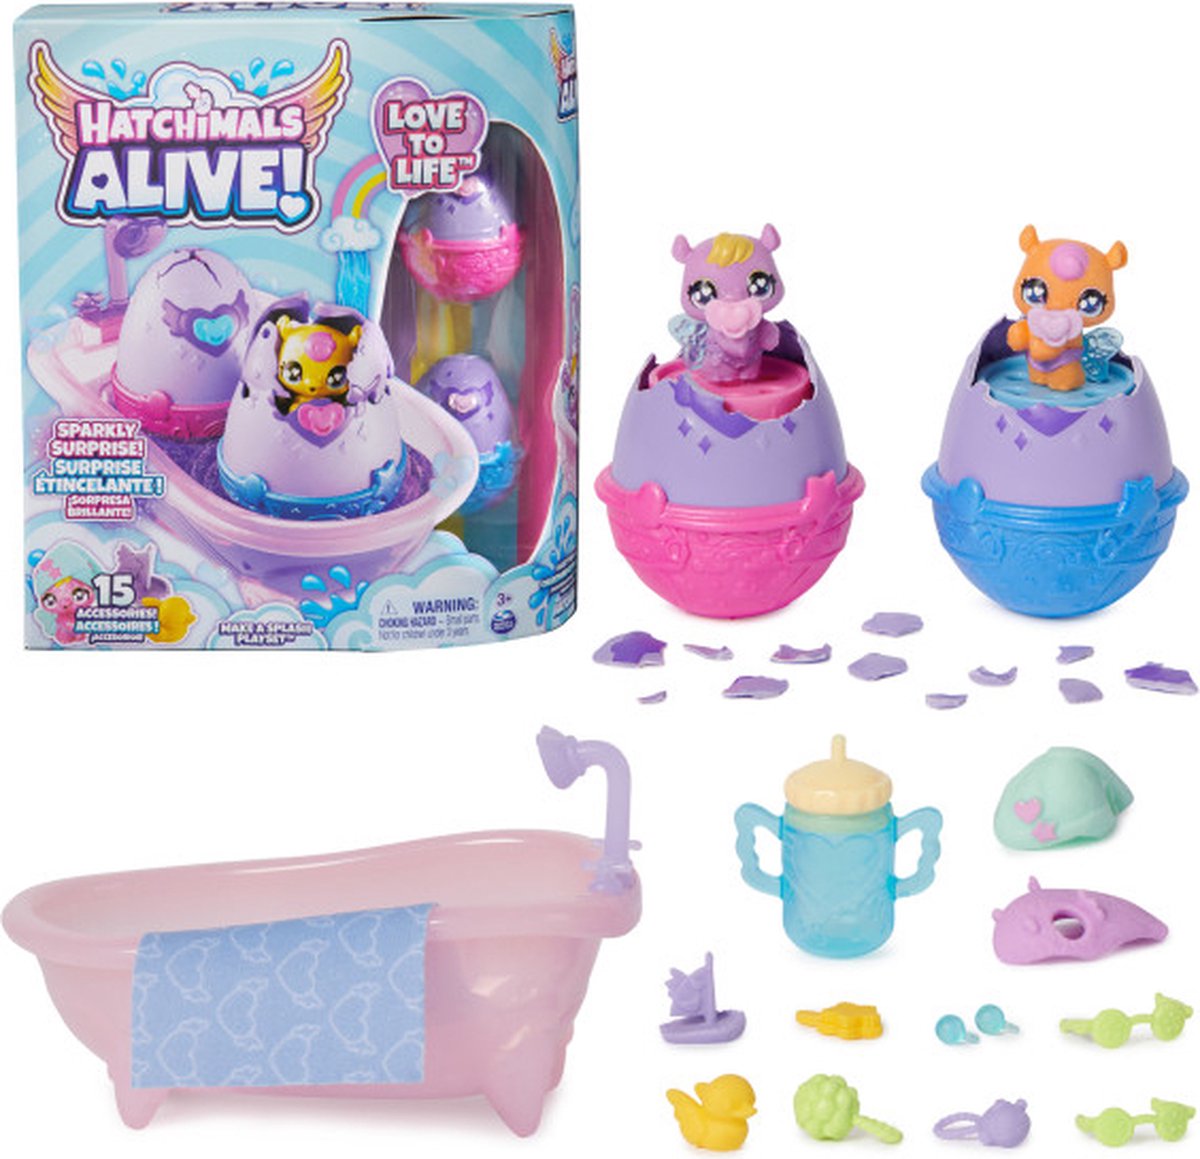 Hatchimals Alive - Maak een Plons Speelset met 15 accessoires - badkuip - 2 van kleur veranderende minifiguren in eieren die zelf uitkomen - Hatchimals